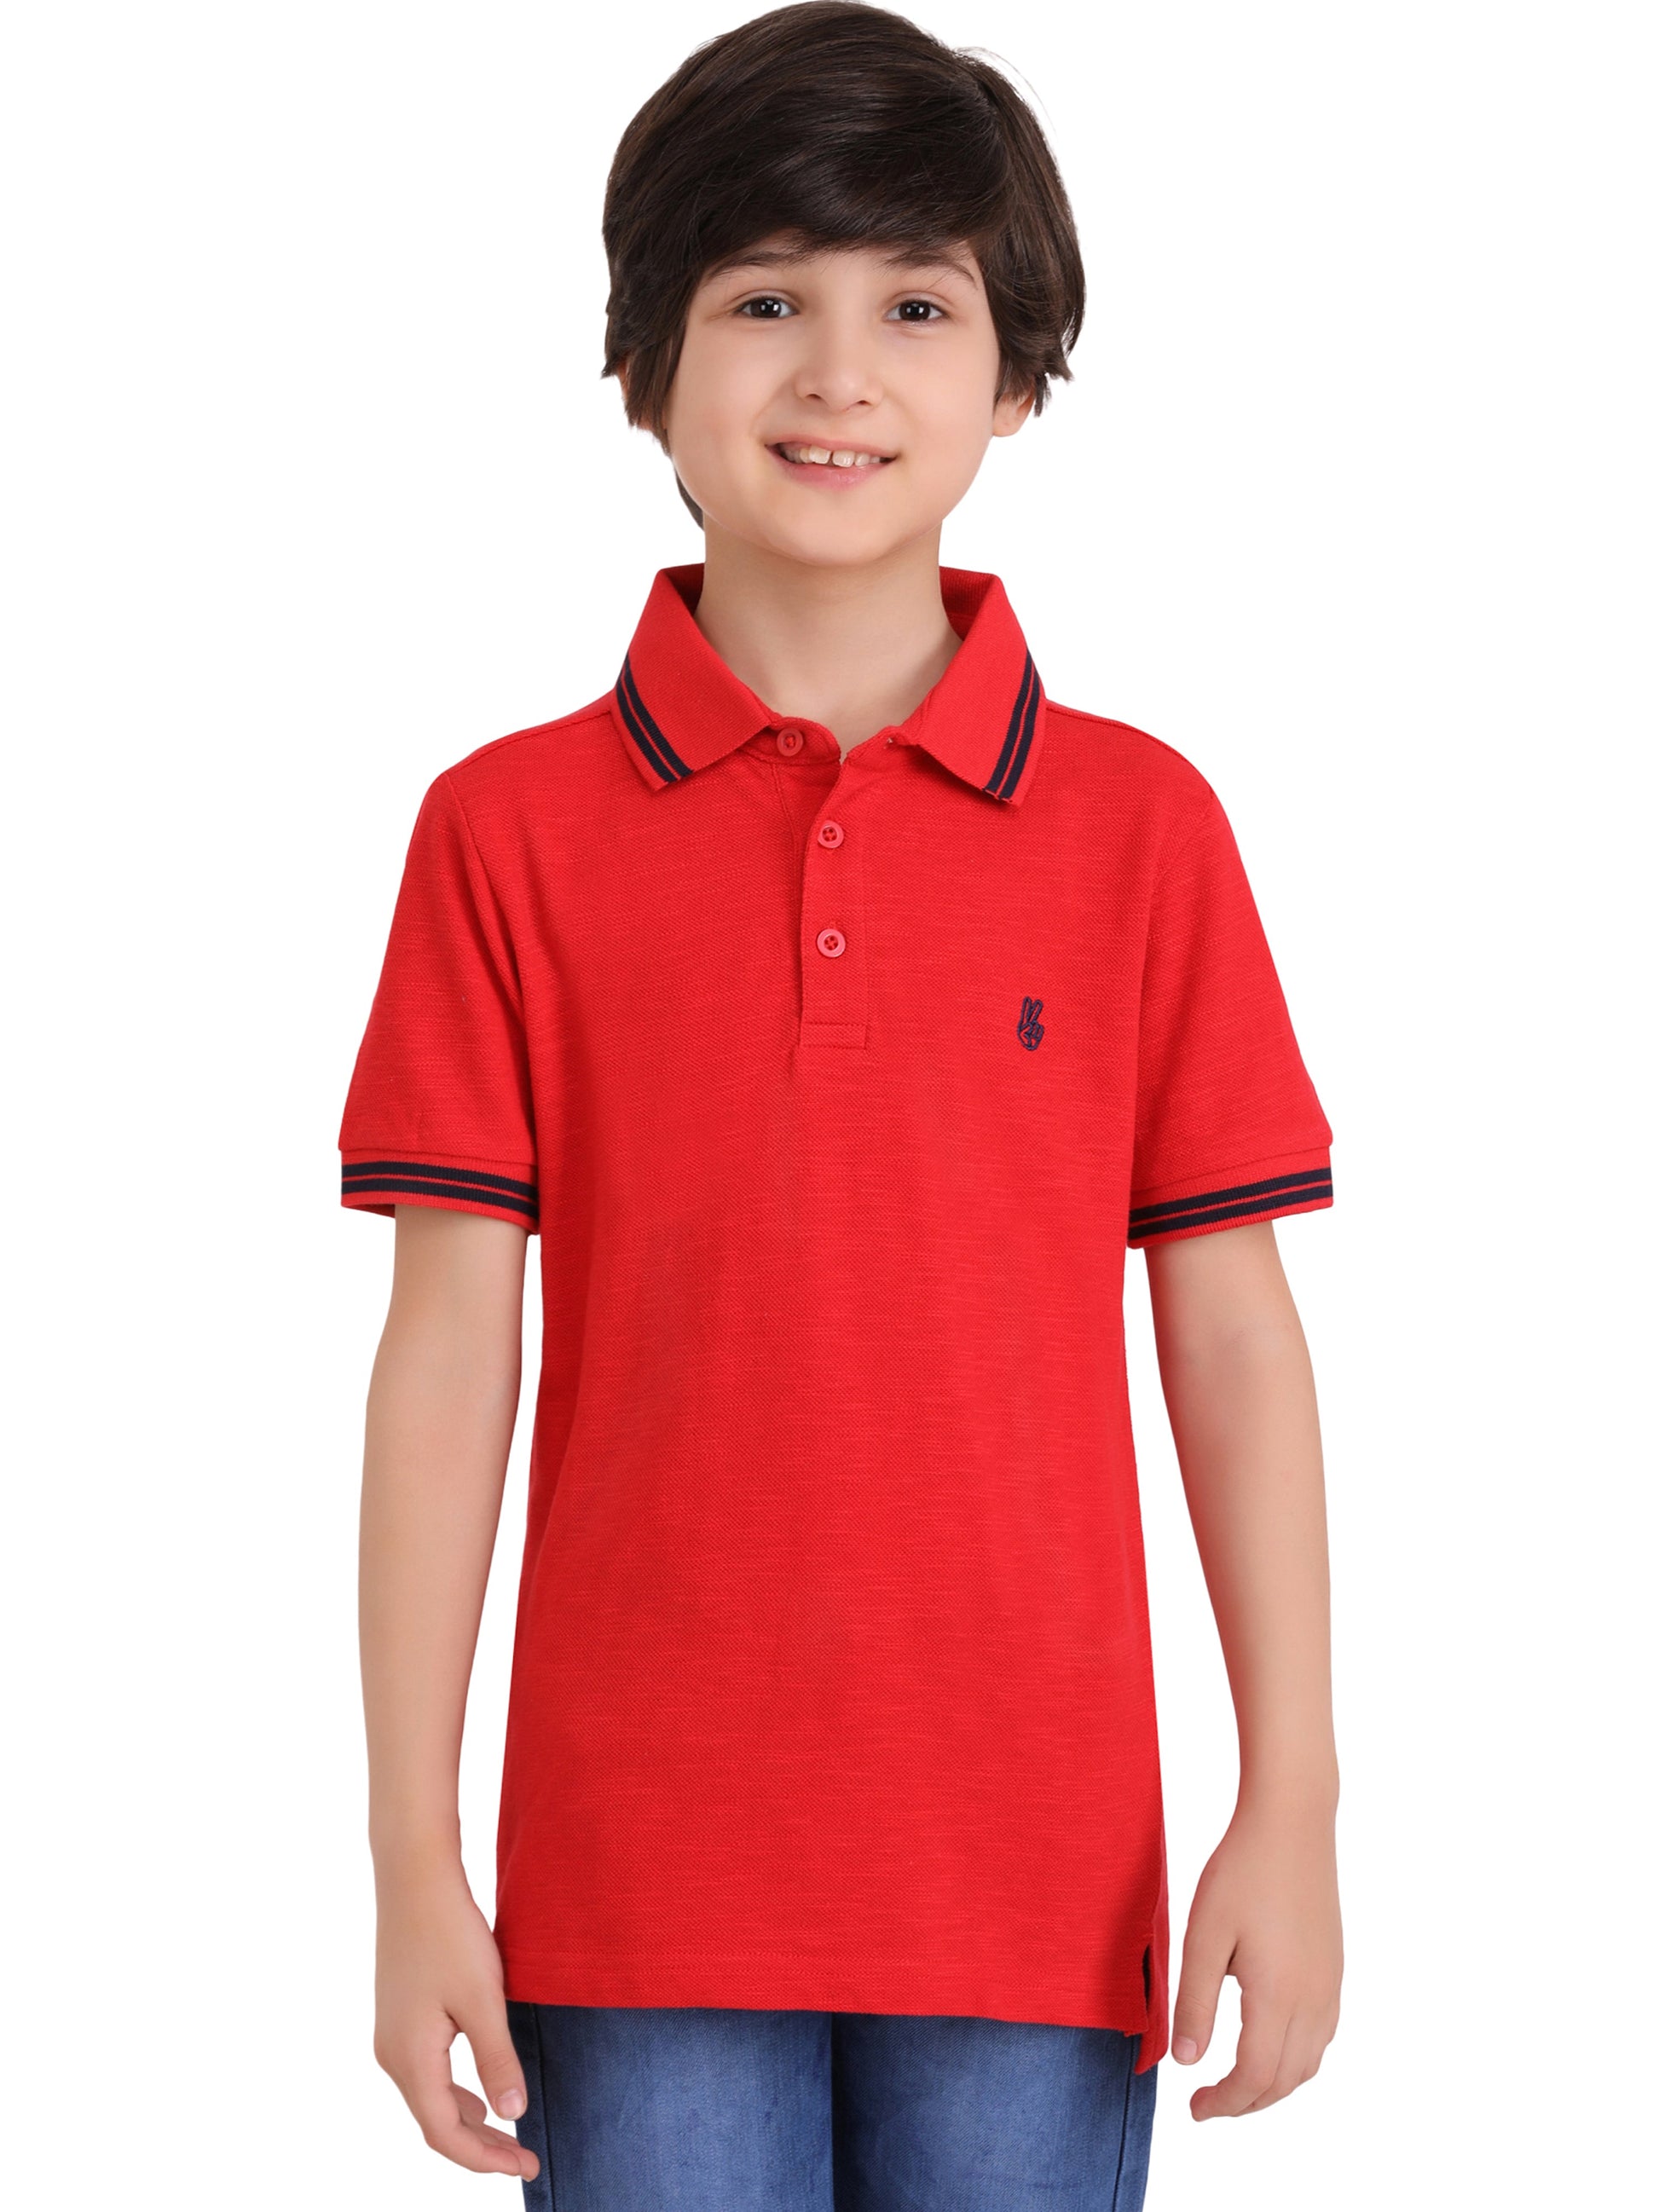 Kinda classy - Boys Collar T-shirt Red